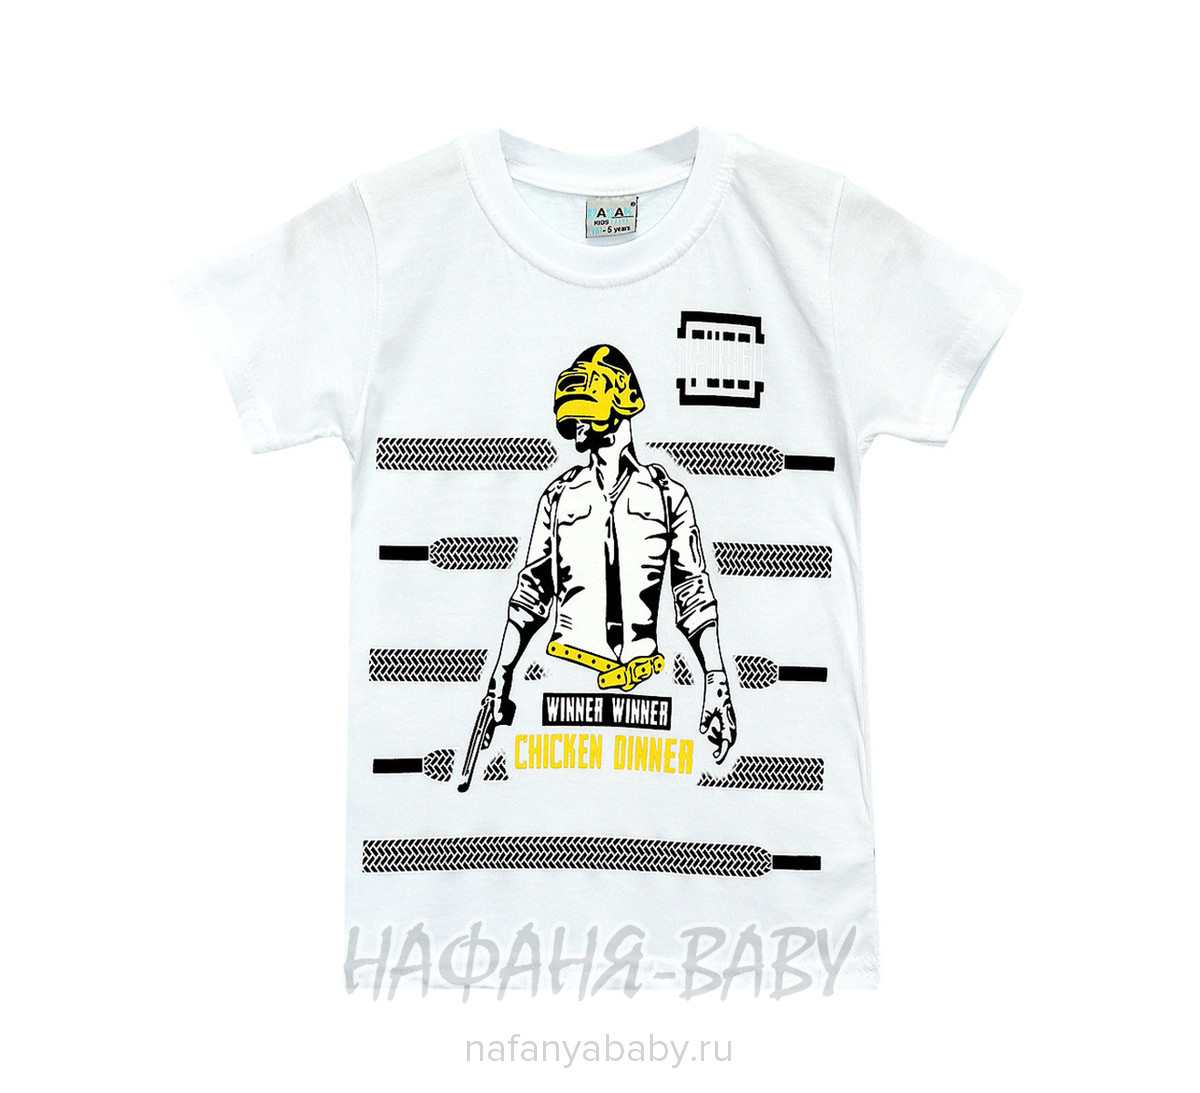 Детская футболка BASAK, купить в интернет магазине Нафаня. арт: 2540.